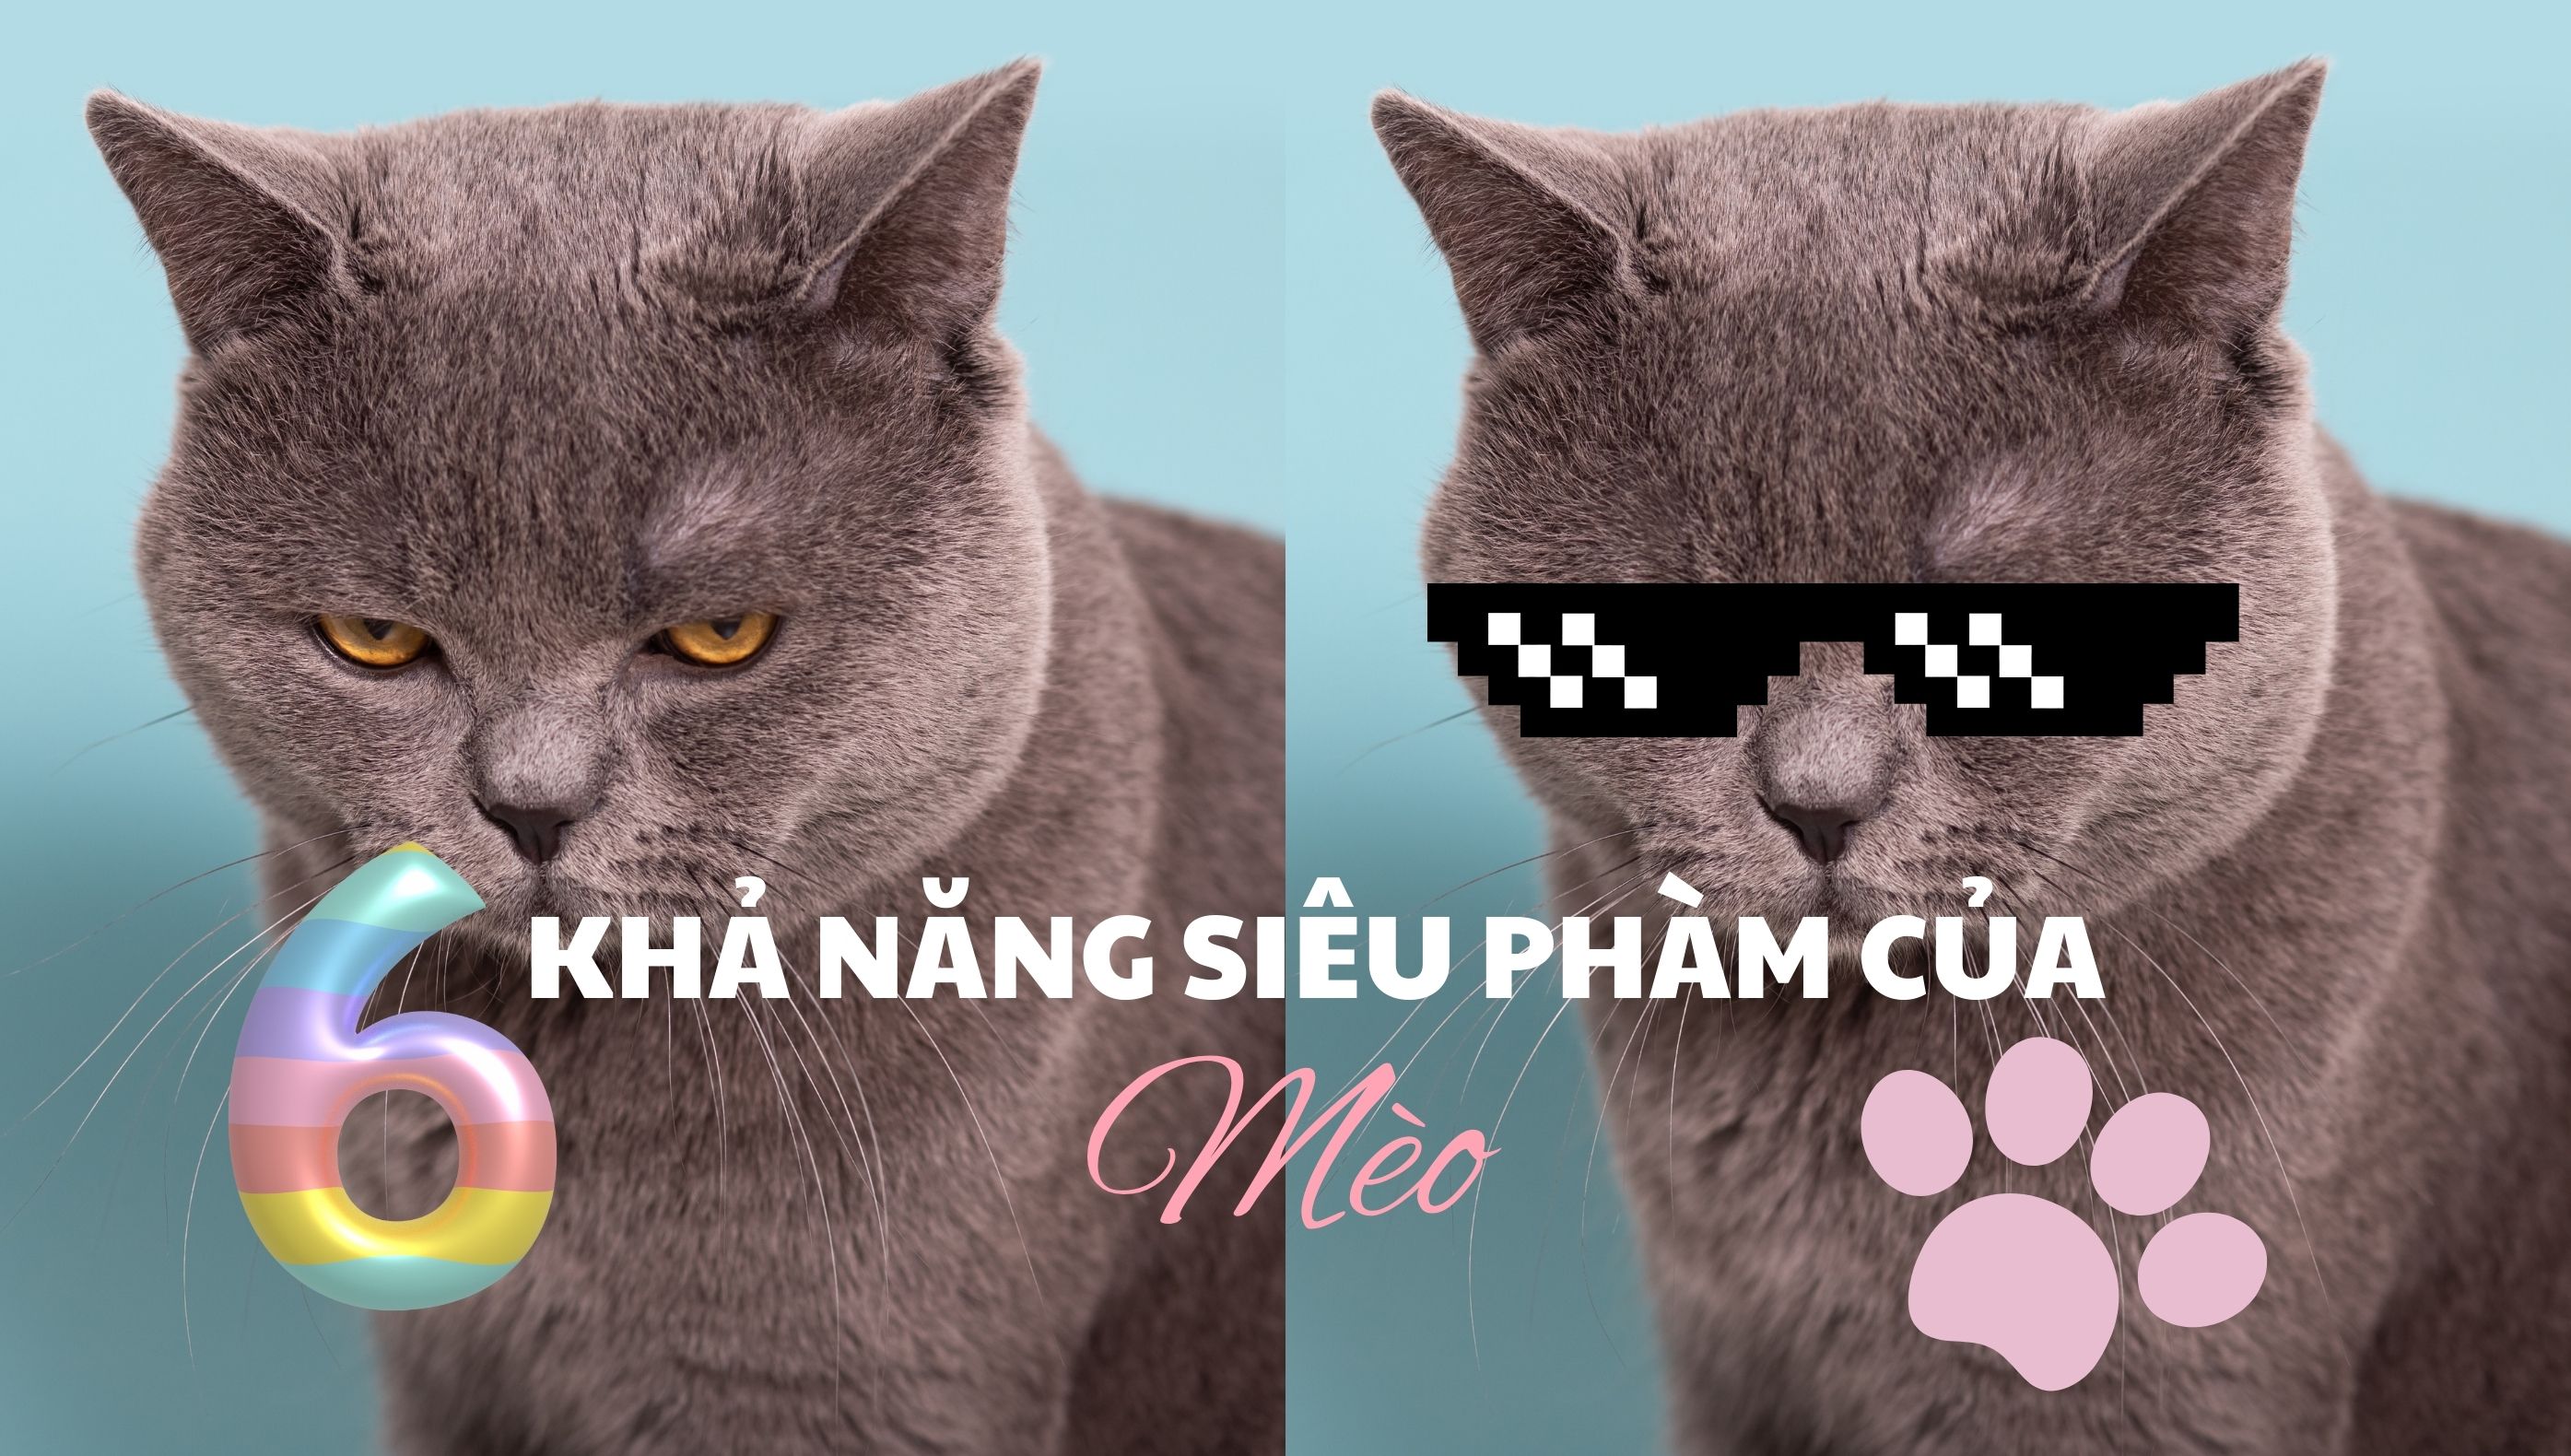 Khả năng siêu phàm của mèo: Sức mạnh bí ẩn dưới đôi mắt ngọc của “Hoàng Thượng”